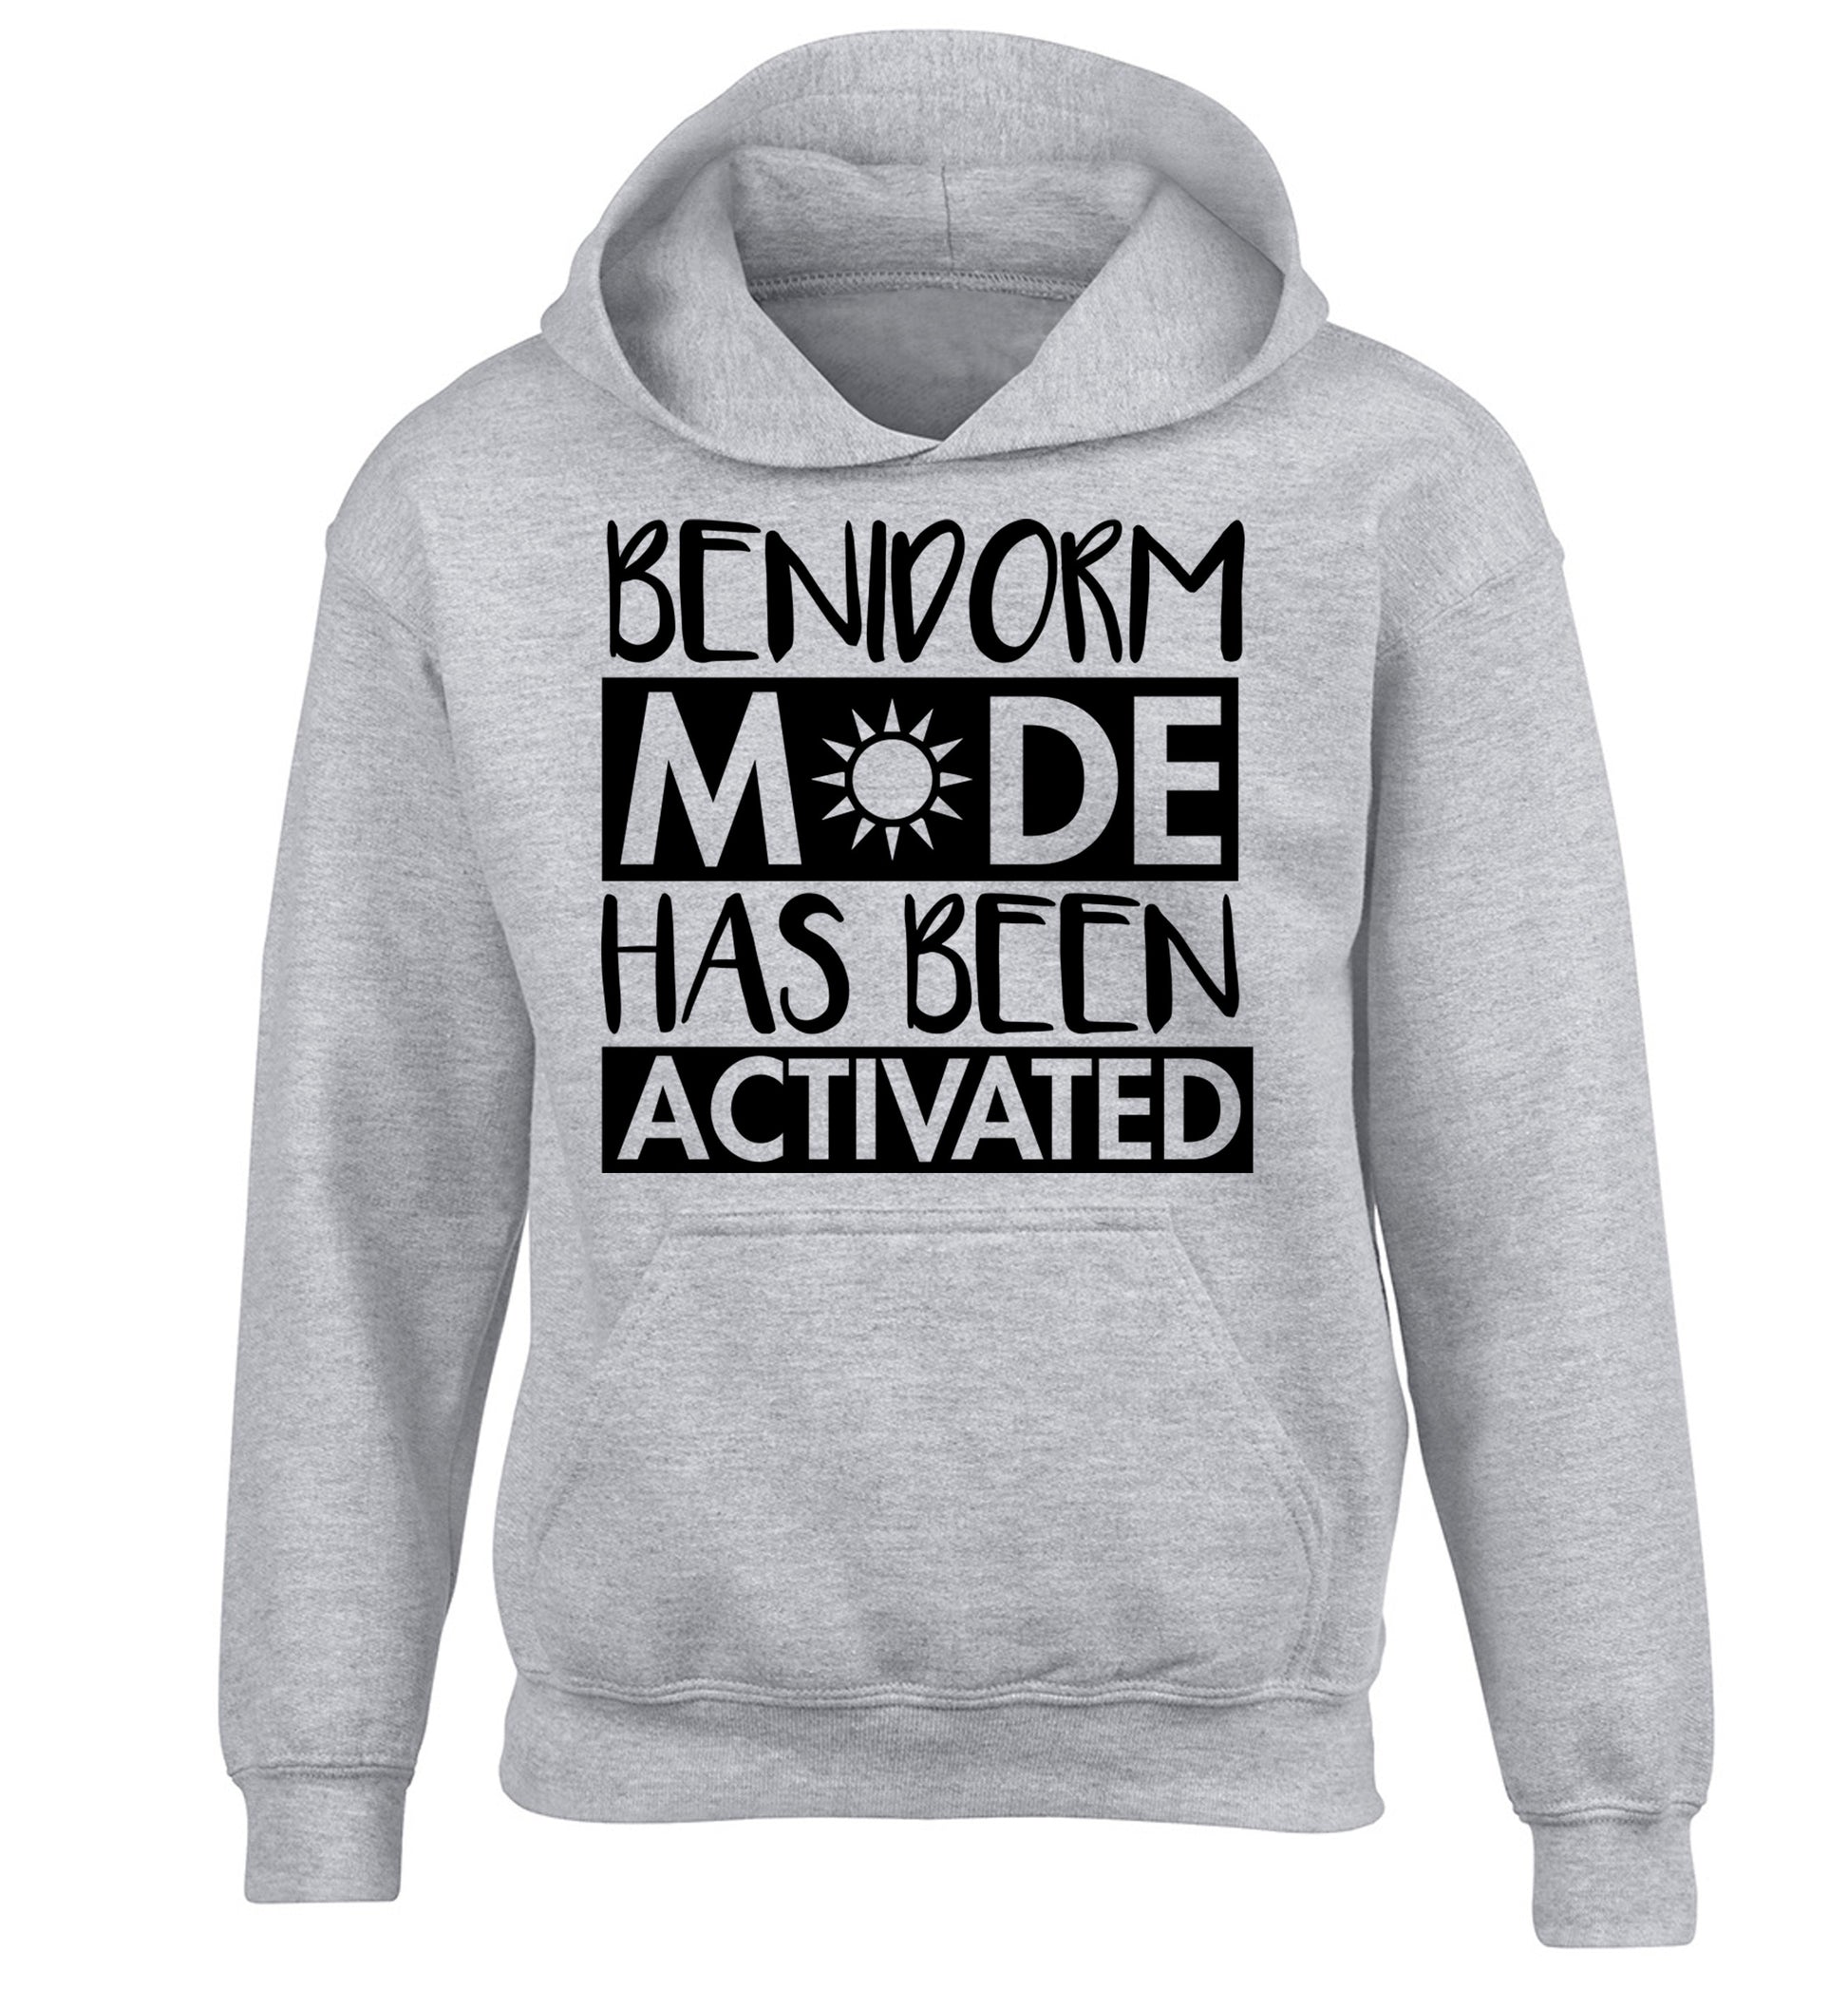 Benidorm mode has been activated children's grey hoodie 12-14 Years